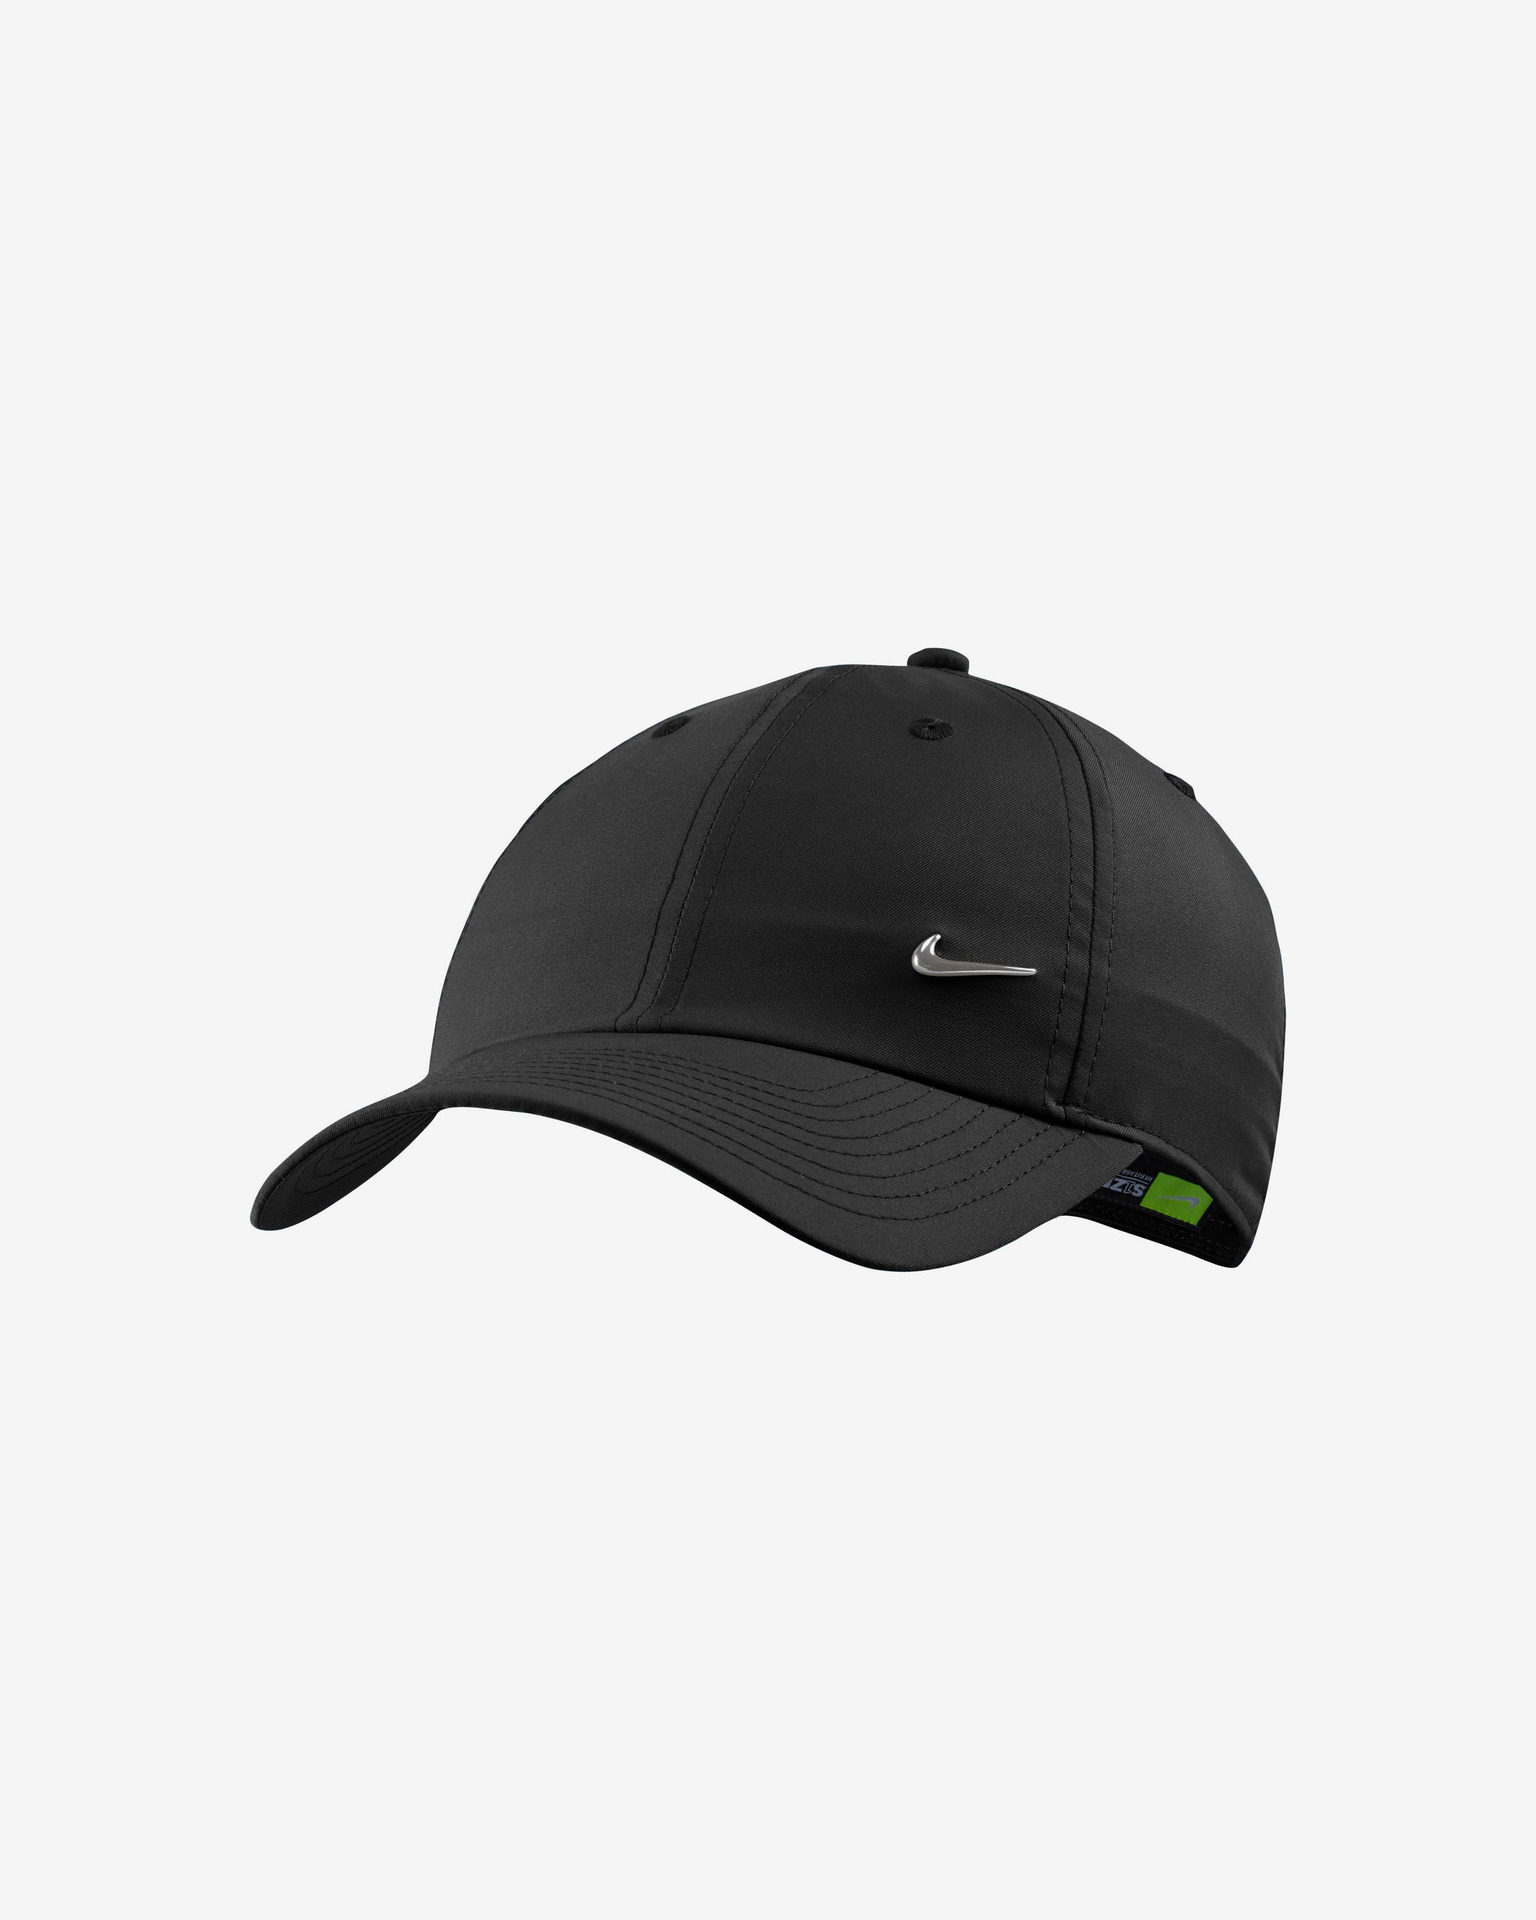 Nike Metal Swoosh H86 Adjustable Cap White